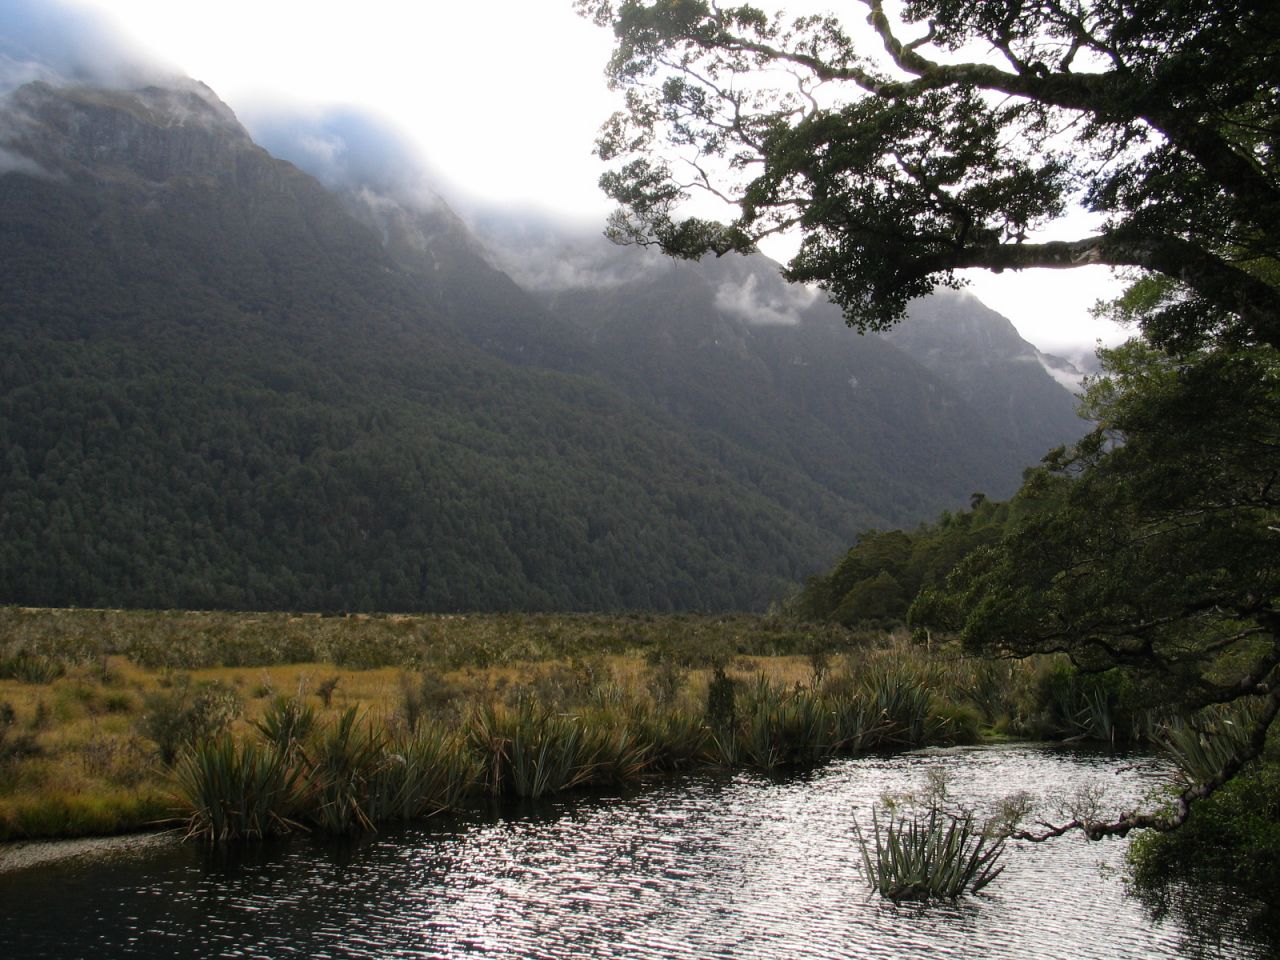 fotka / image cestou z Te Anau k Milford Sound, New Zealand, kolekce E